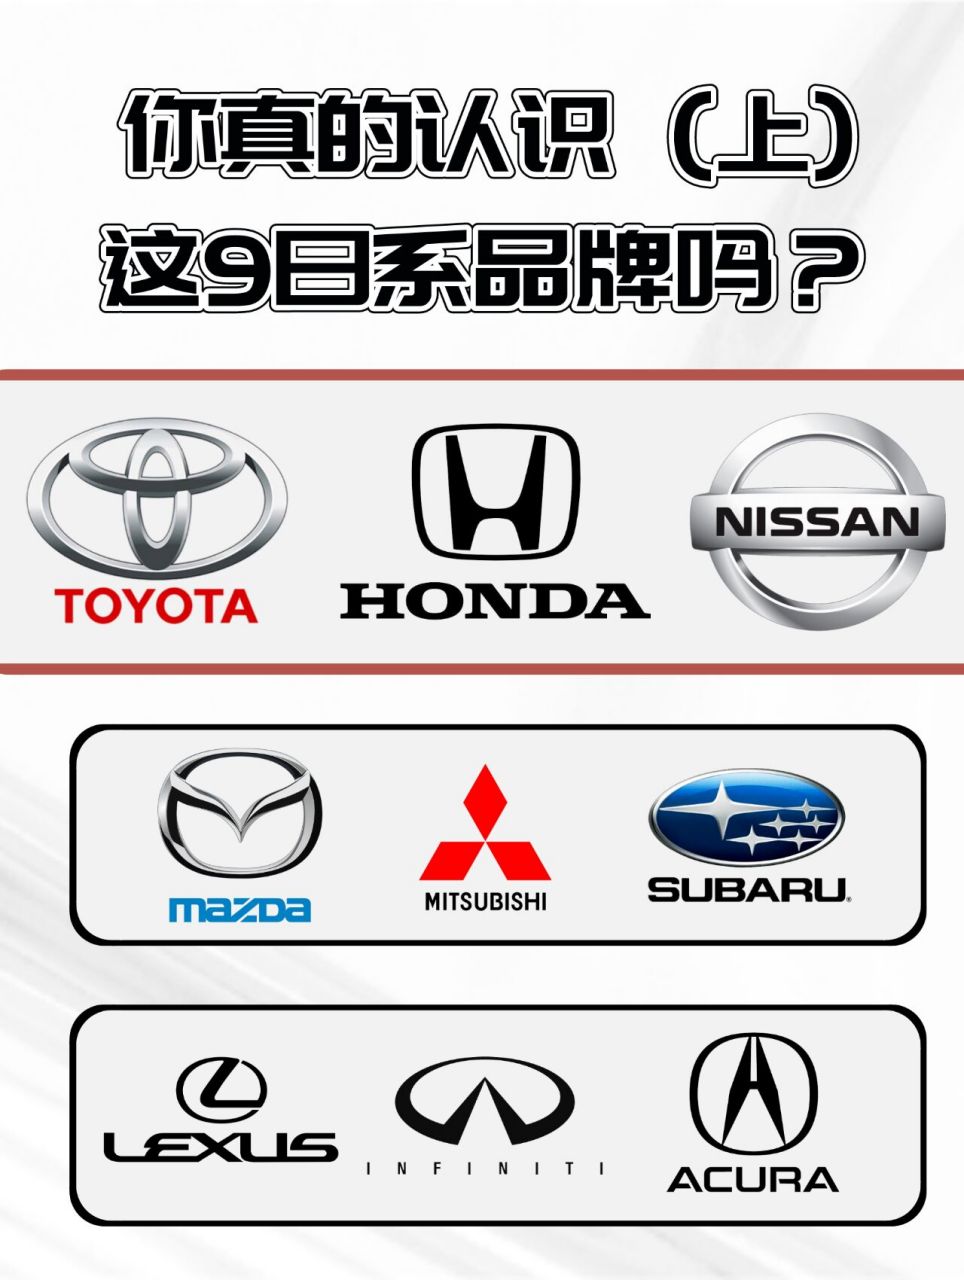 这9大日本汽车品牌你真的认识吗(上) 像这样的汽车知识小编还有很多喔